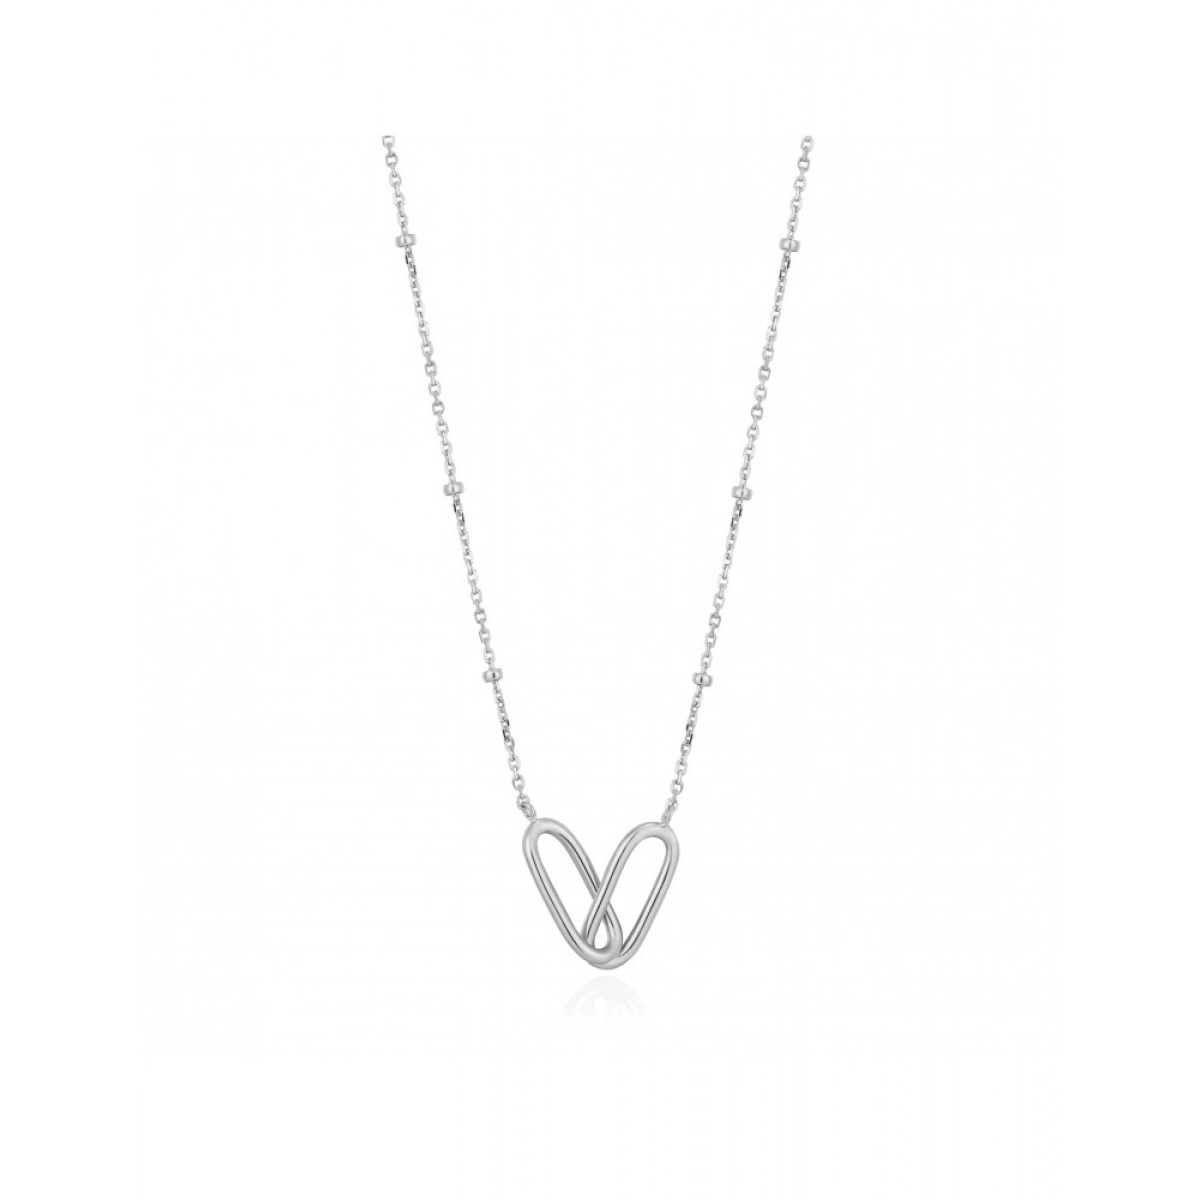 Collar Ania Haie Silver Beaded Chain N021-01H Plata de Ley 16170045